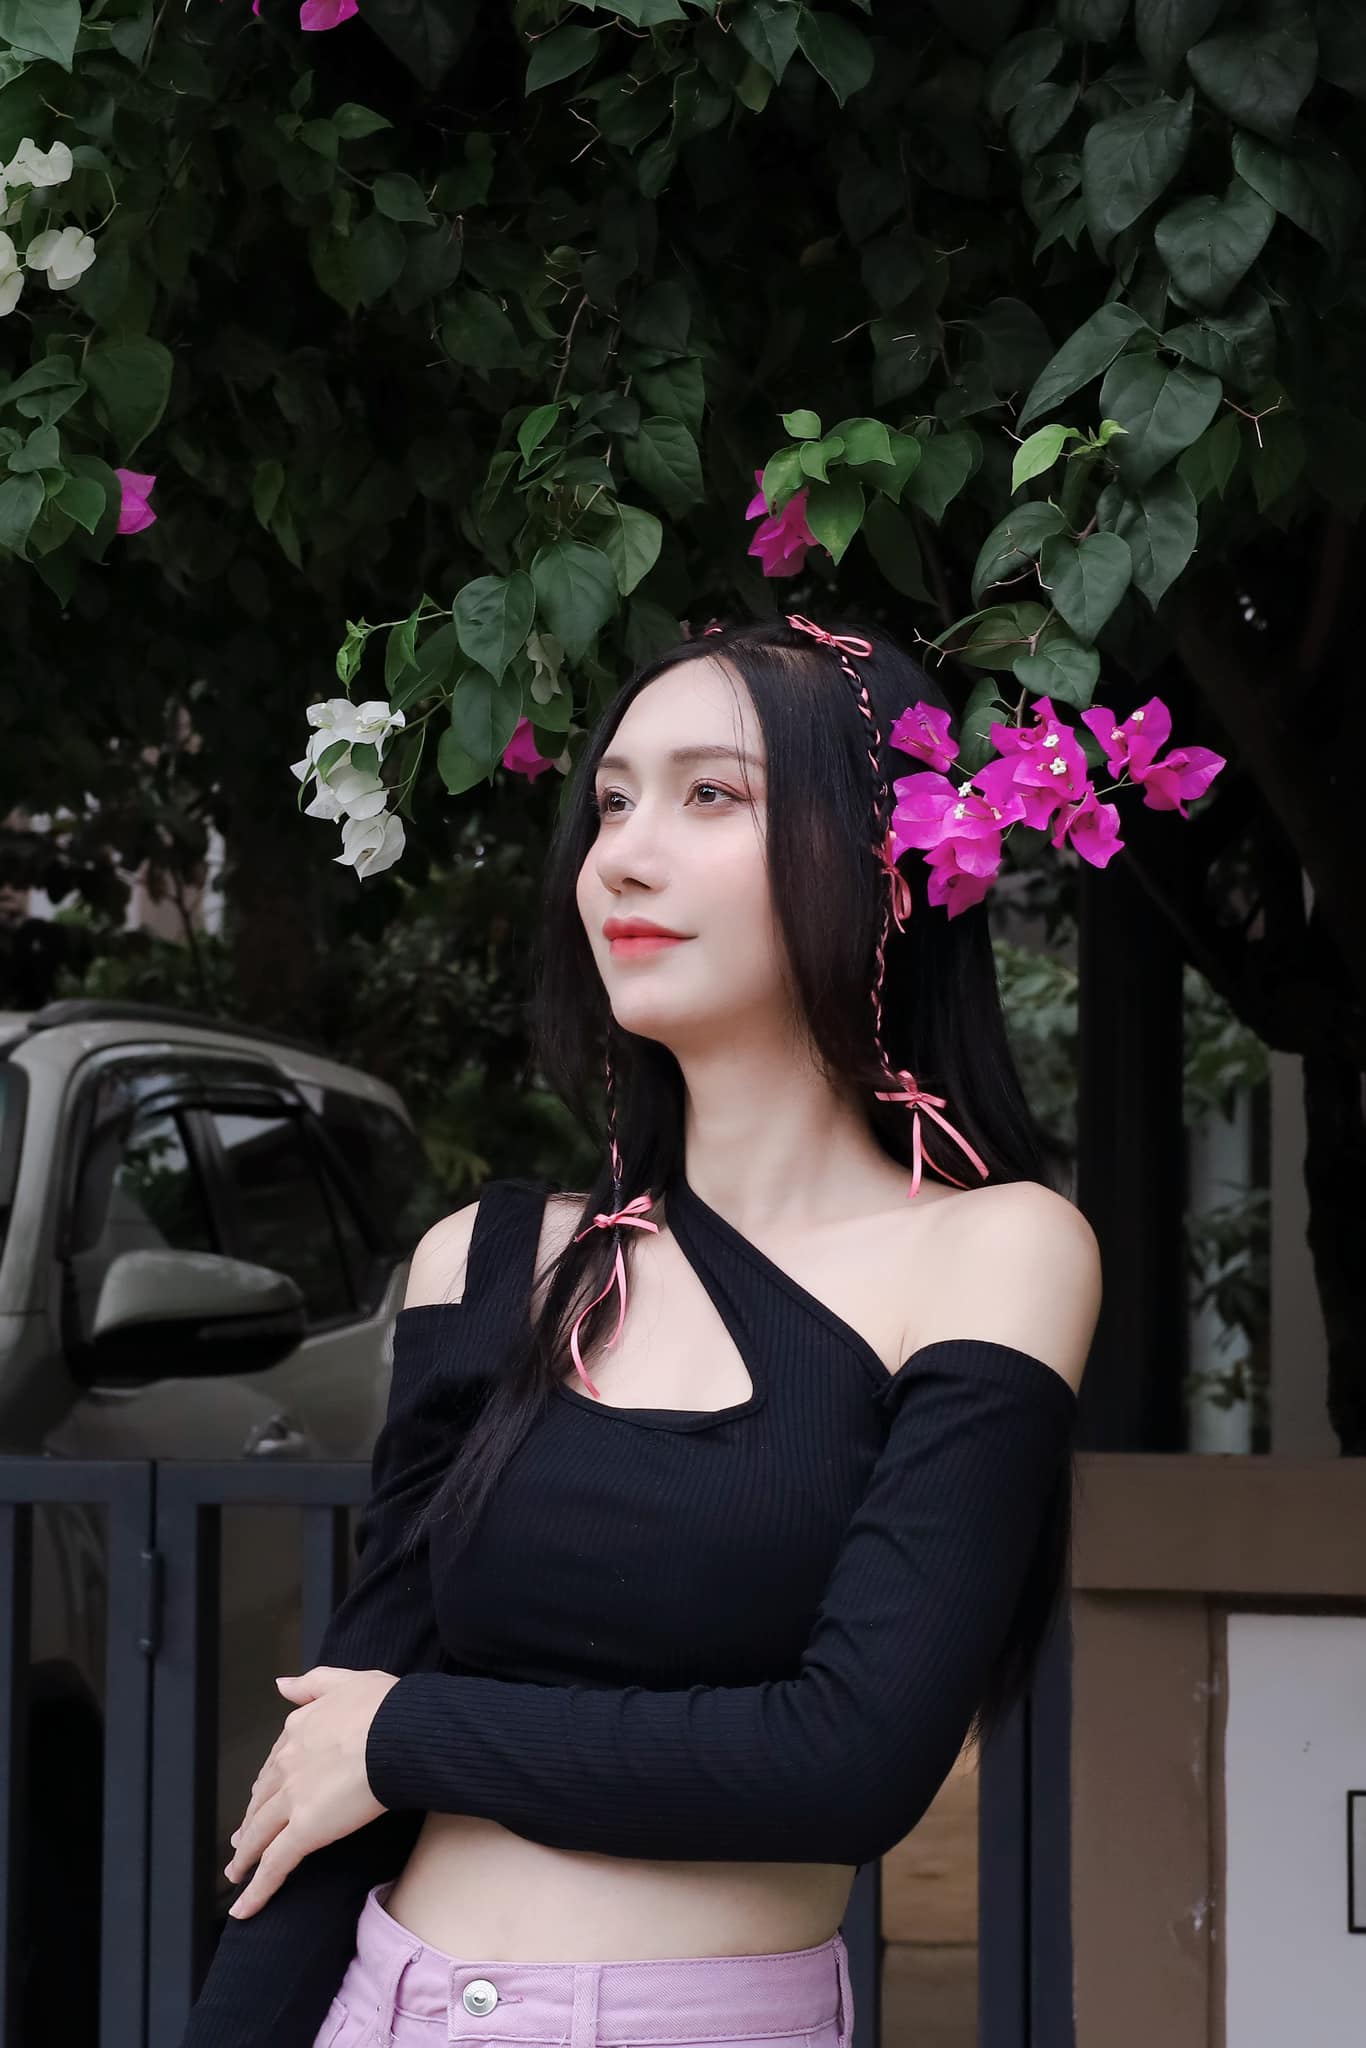 "Chị đẹp" Bắc Giang khiến fan phải "dụi mắt" khi mặc váy gây ảo giác lên thảm đỏ - 8